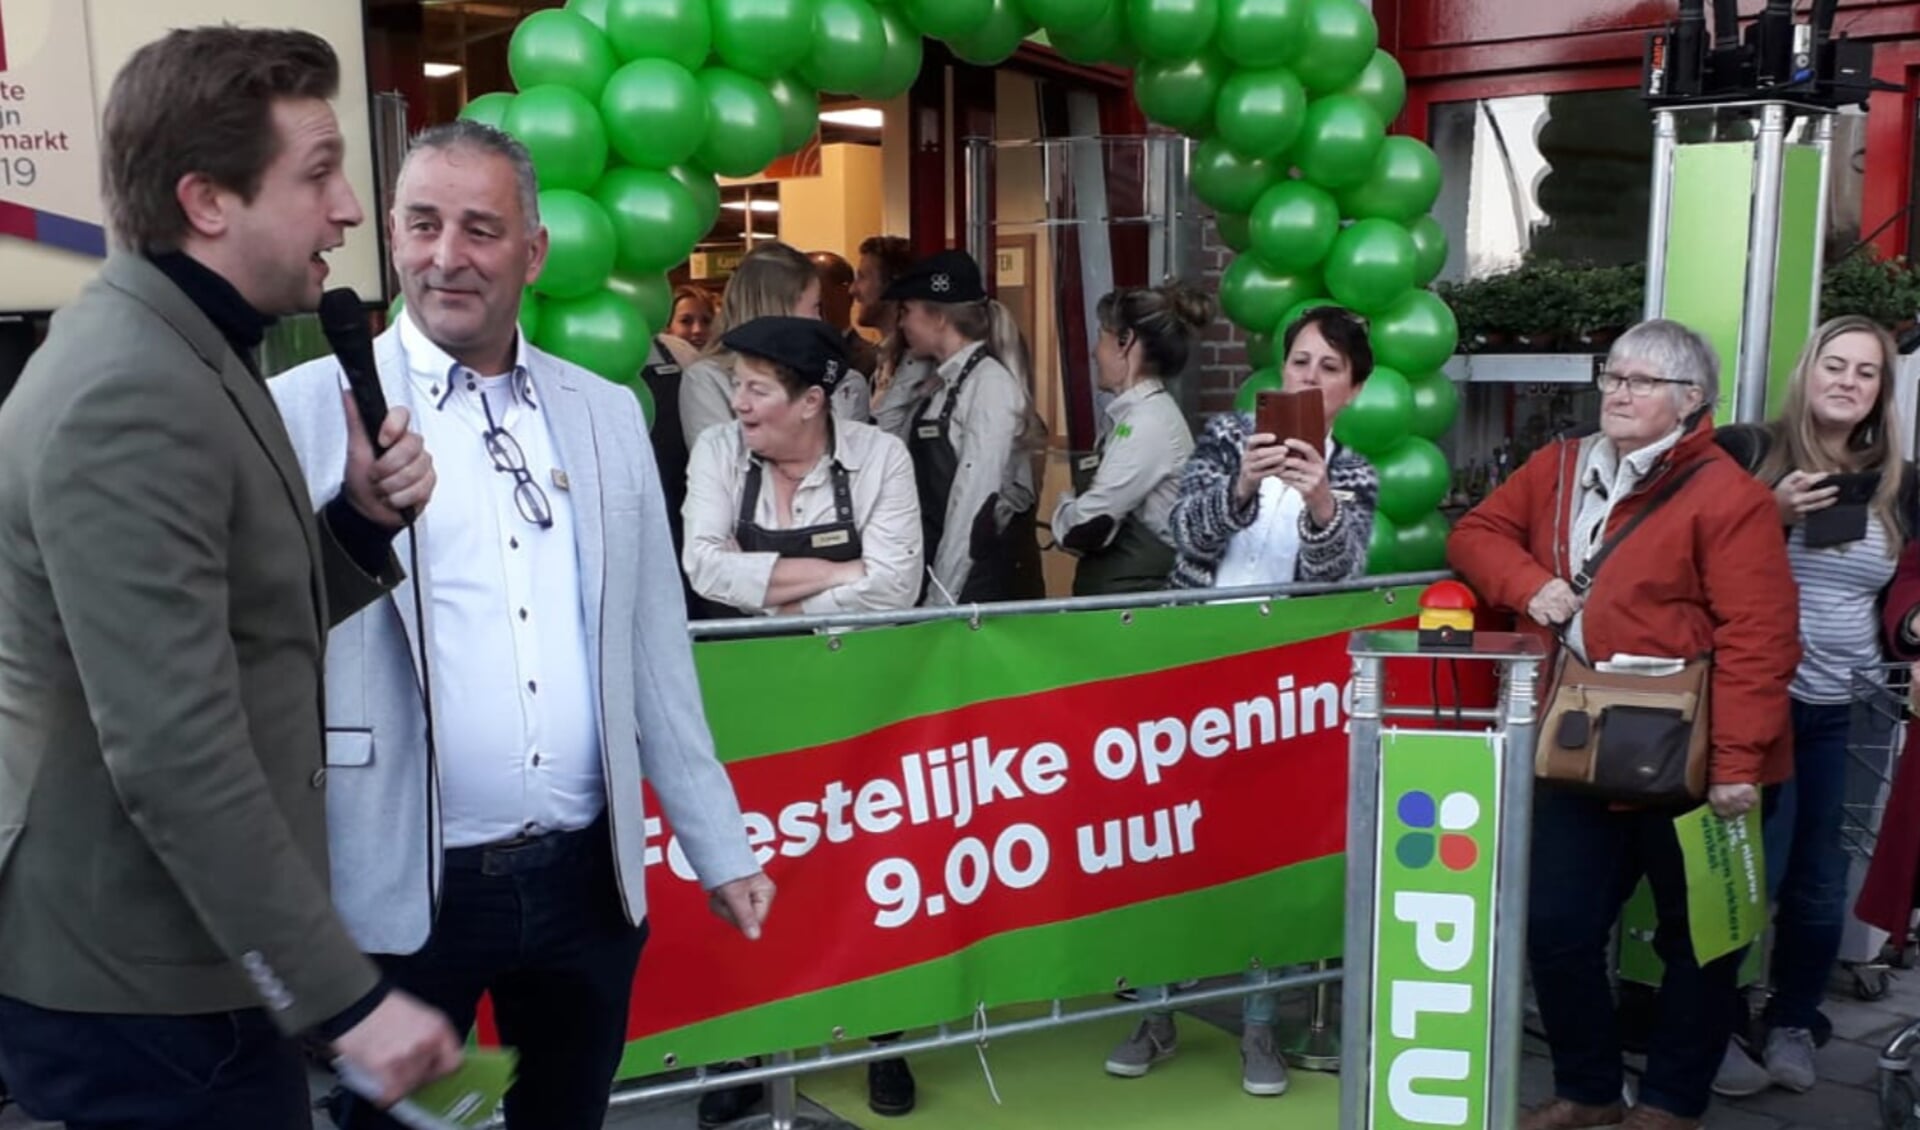 Supermarktmanager Geurt Schut (tweede van links) en zijn team wachten met spanning op het moment waarop de  winkel wordt geopend.